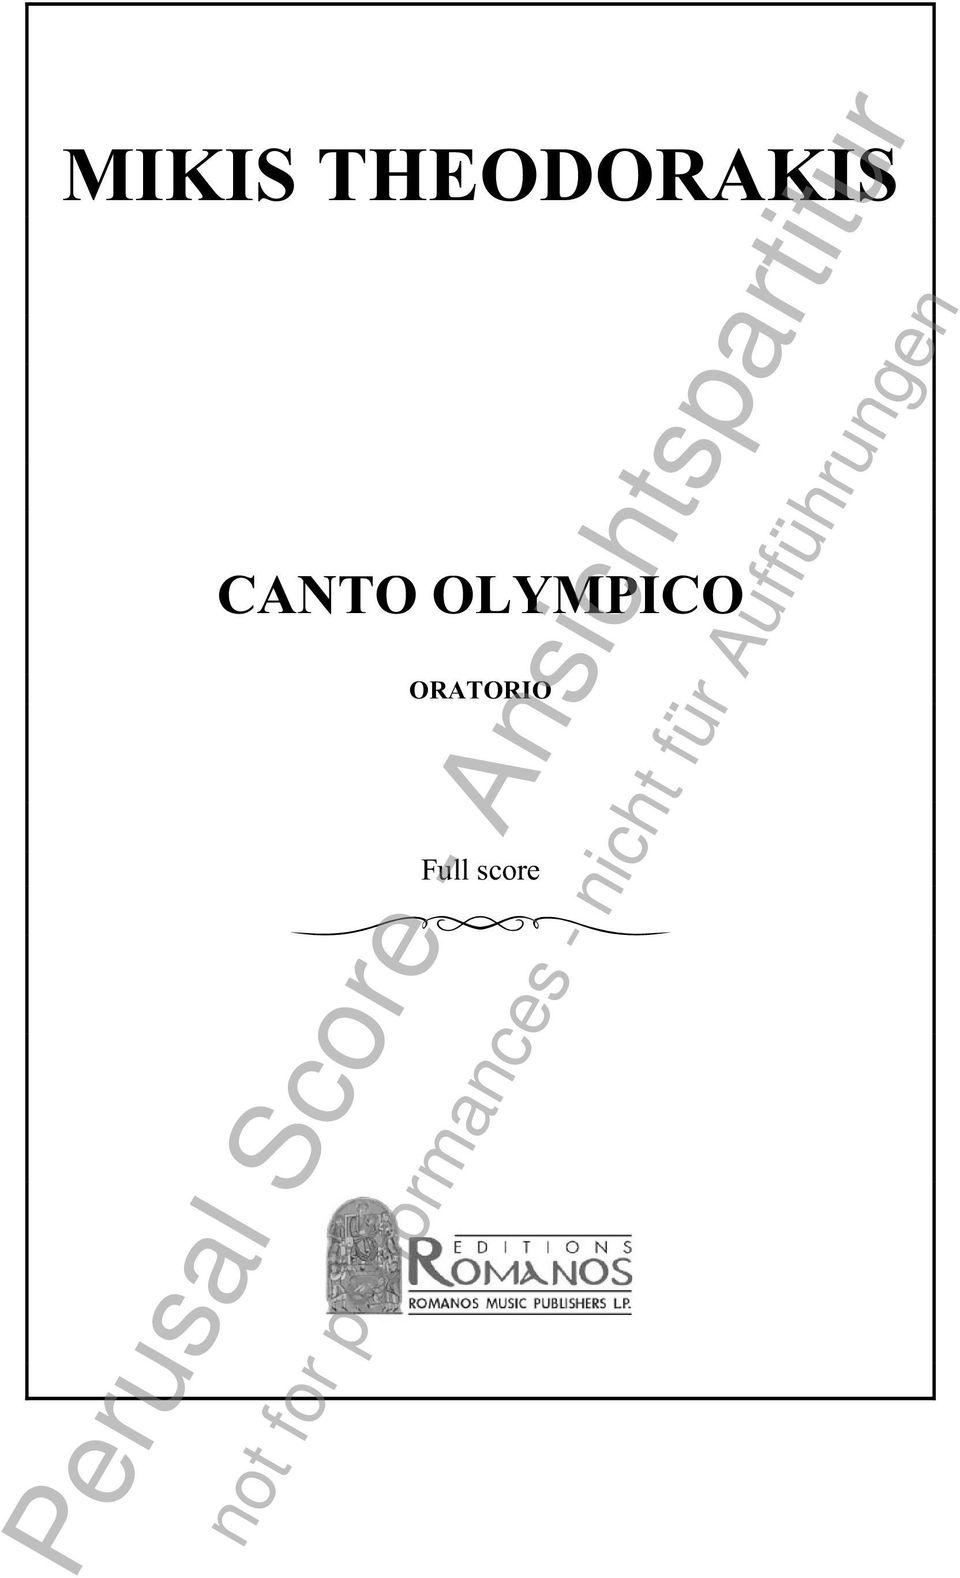 A CANTO OLYMPICO u